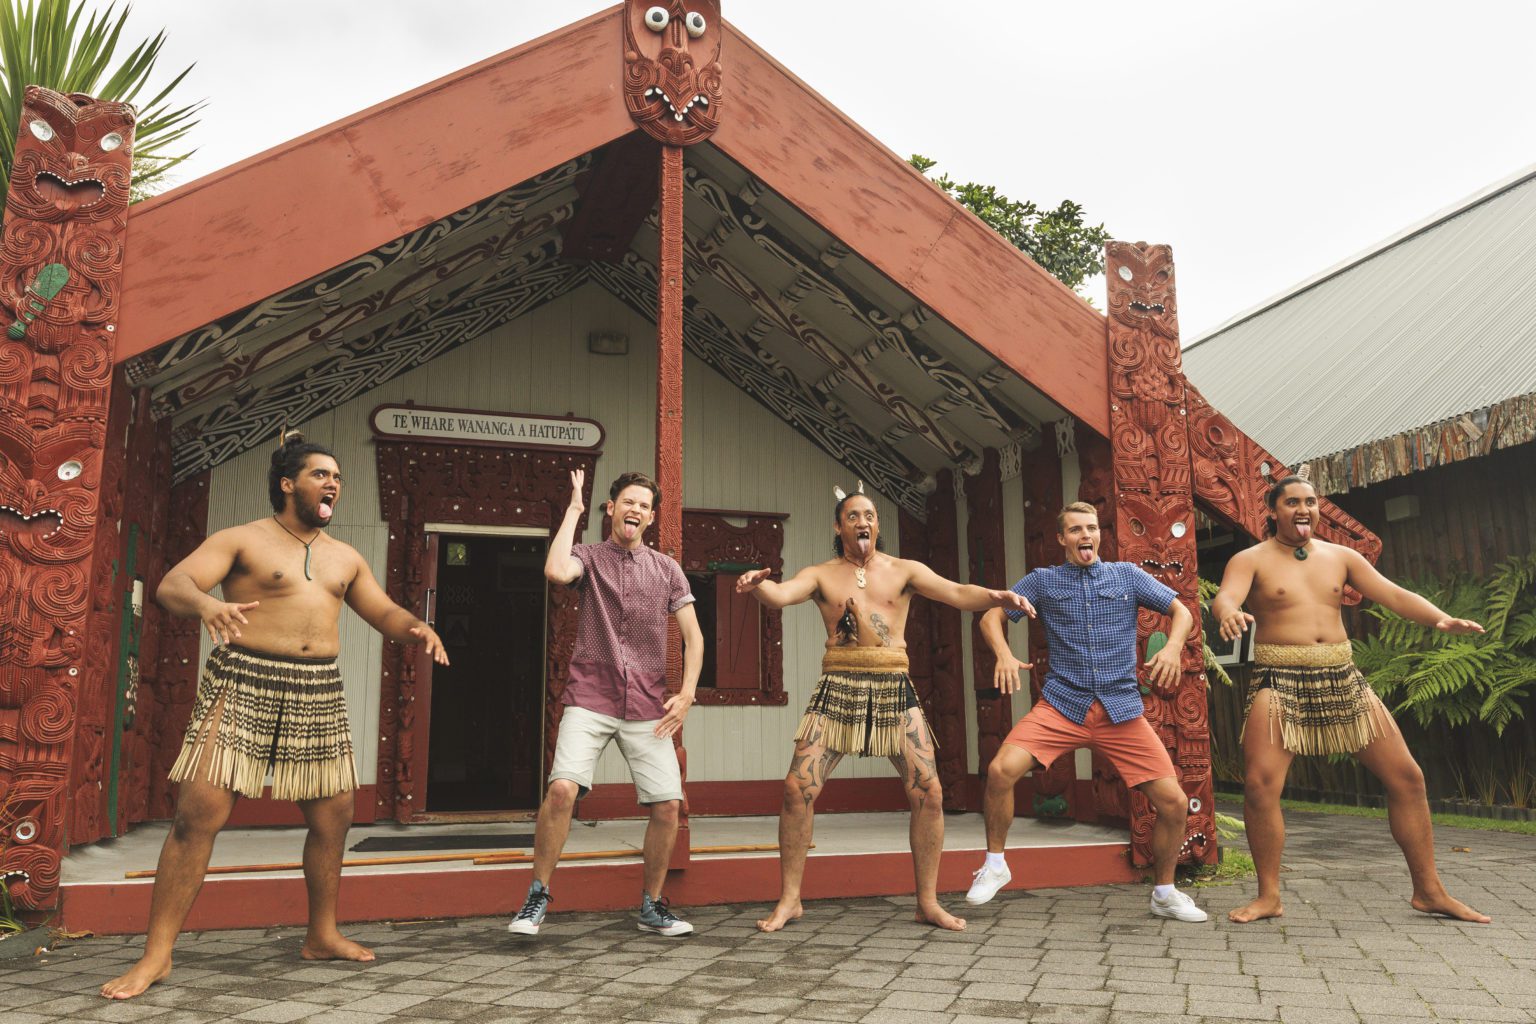 Tourists doing the Haka with some Maori guys at Te Puia